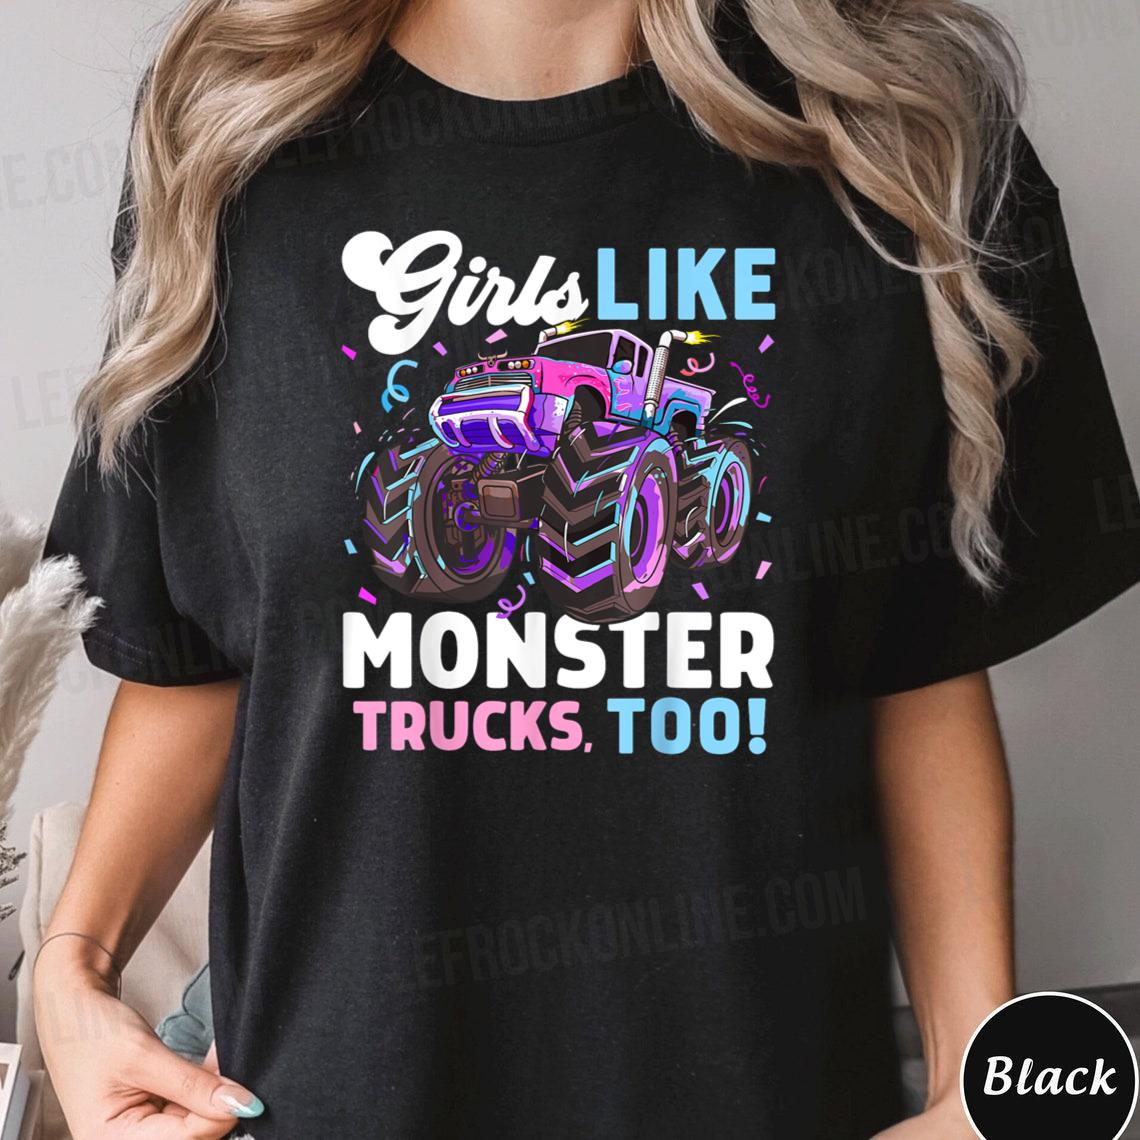 Cute Monster Truck Girls Like Monster Trucks Too